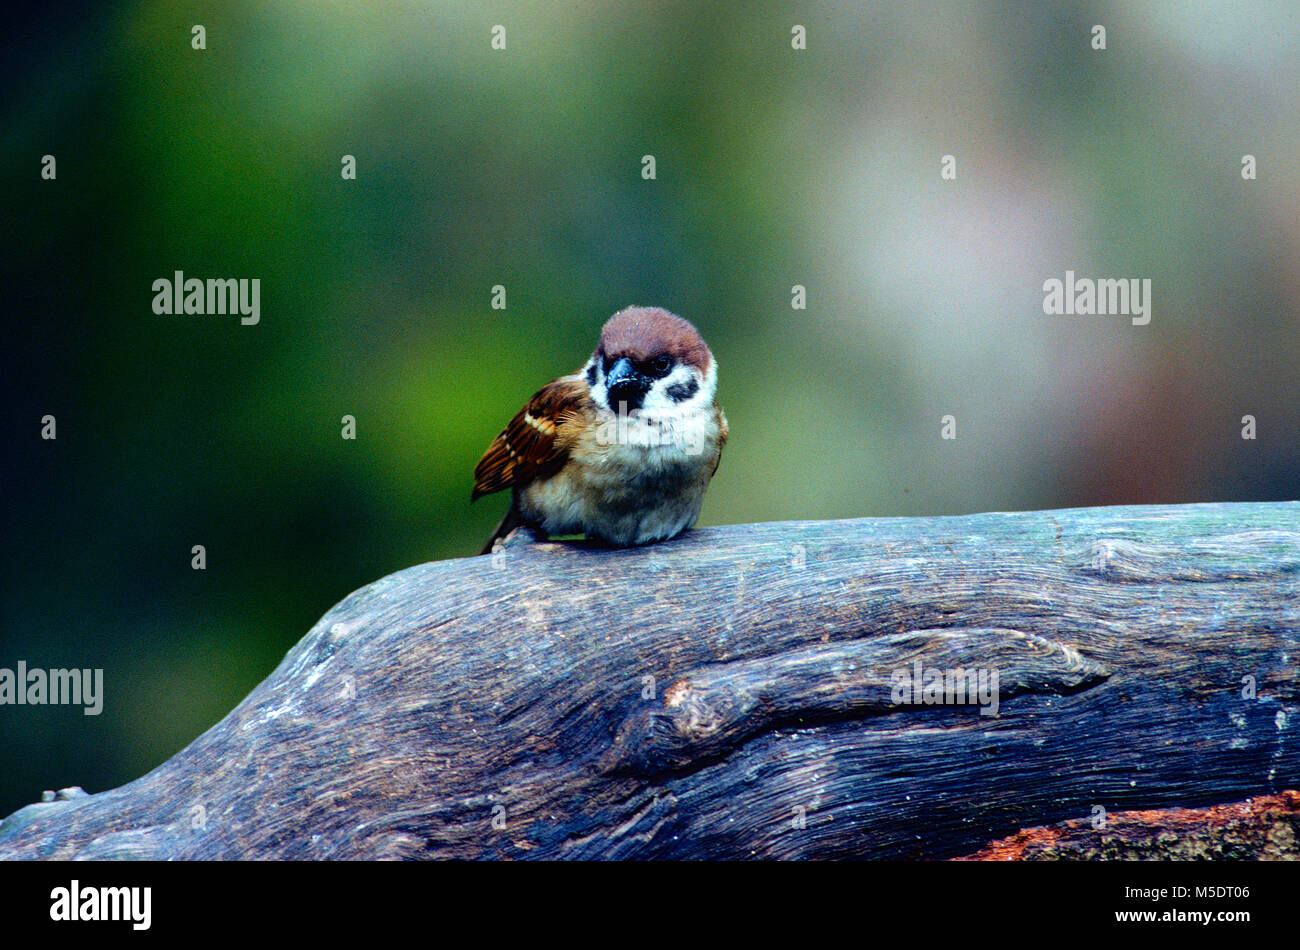 Eurasian Tree Sparrow, Passer montanus, Passeridae, Sparrow, bird, animal, Singapore Stock Photo